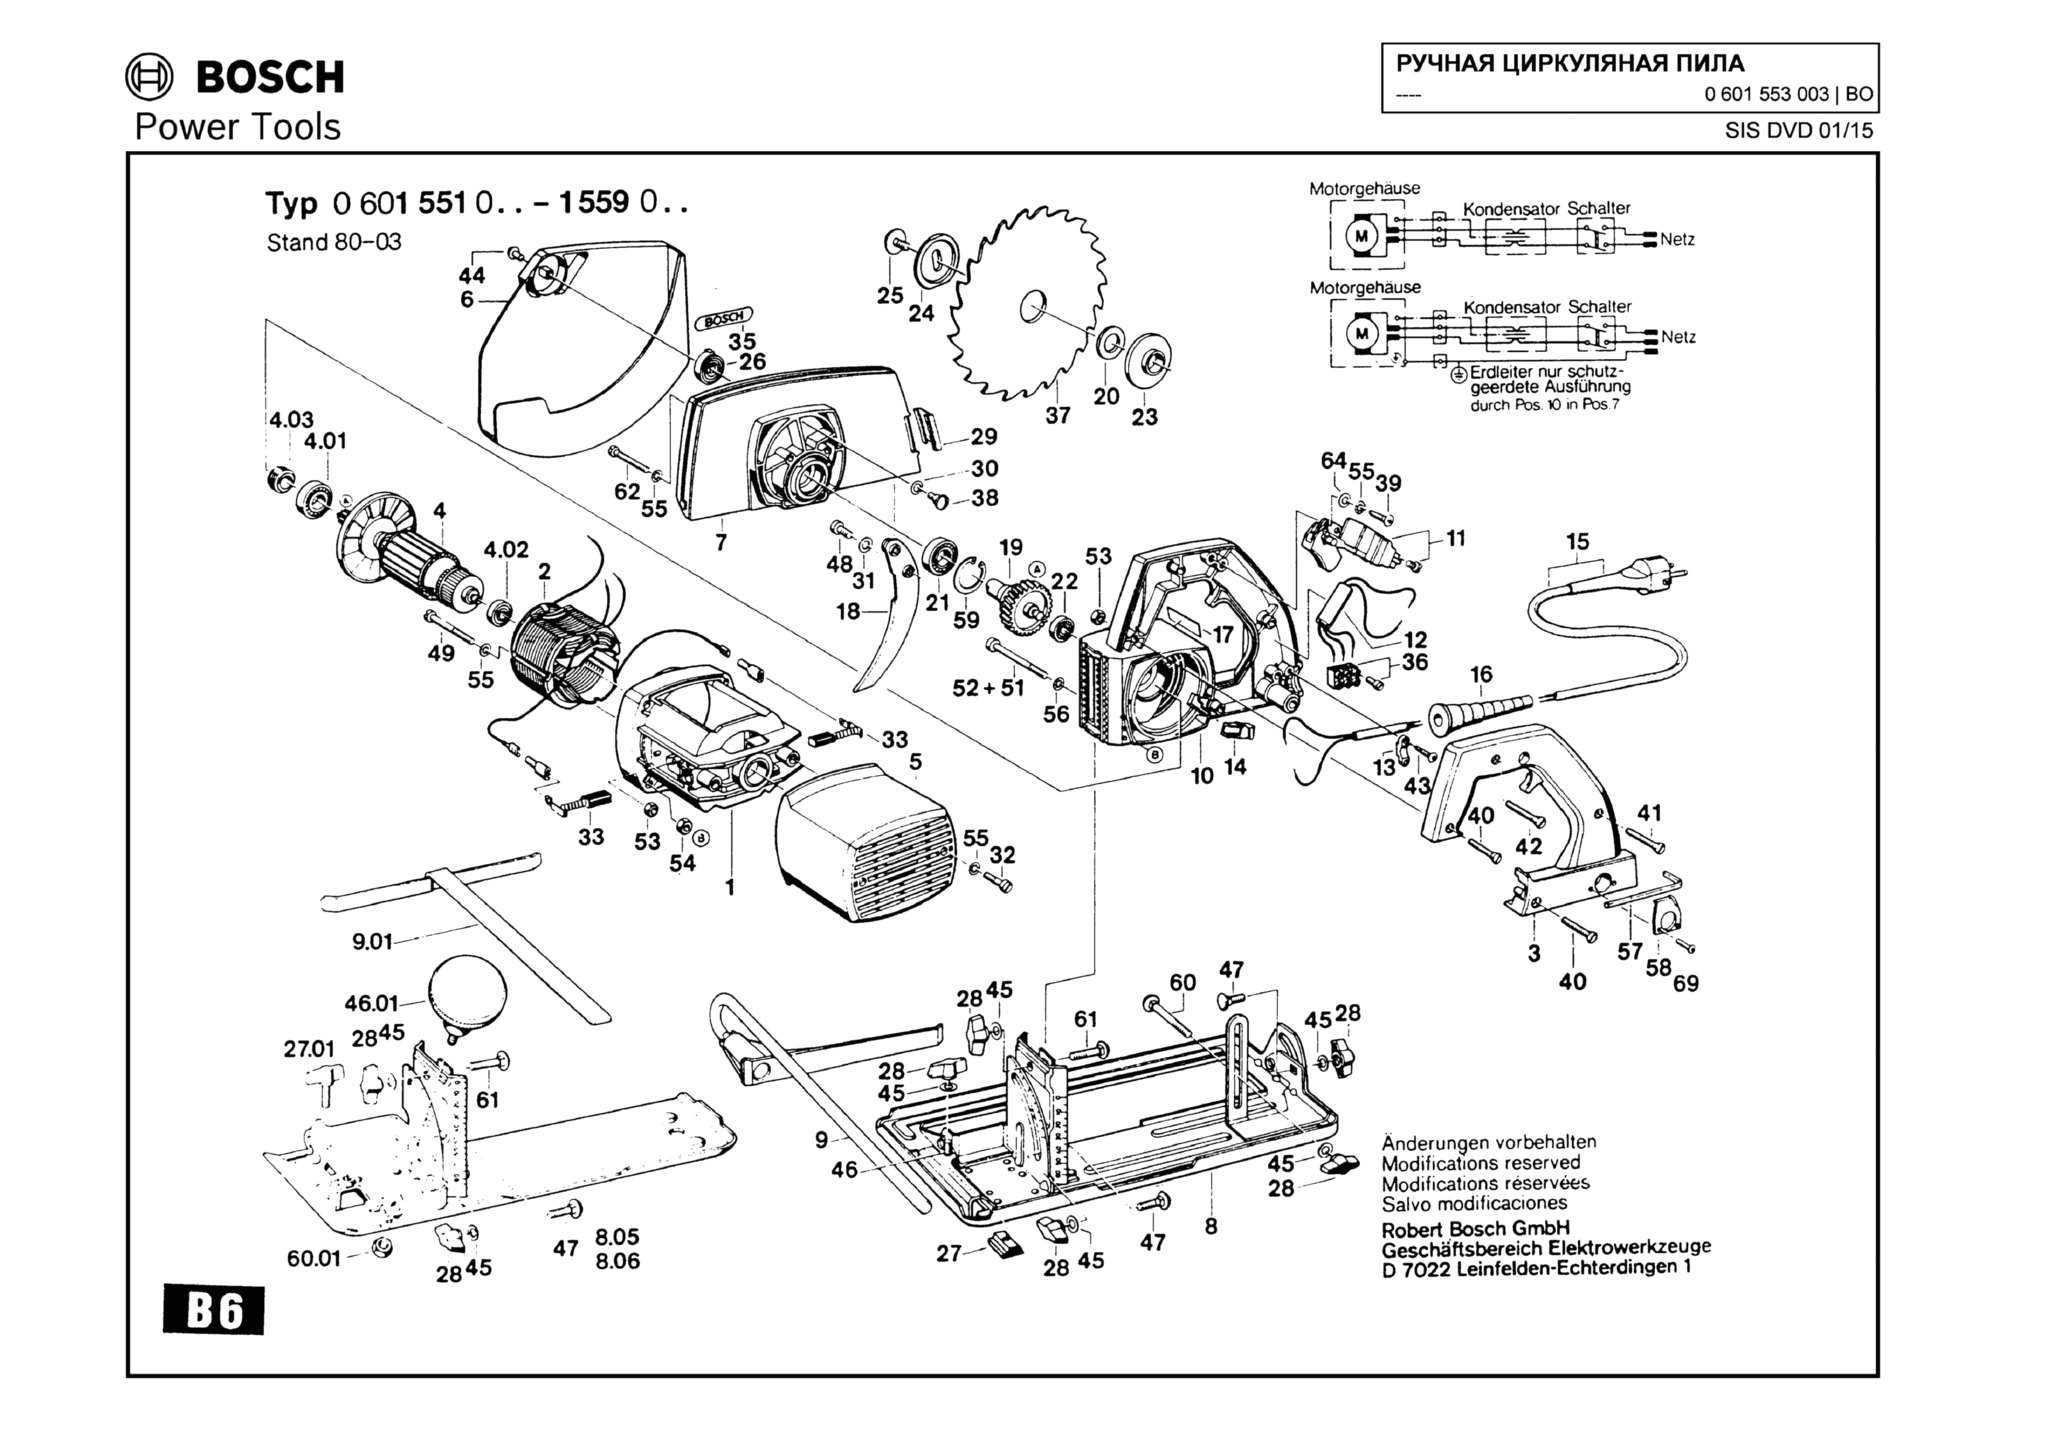 Запчасти, схема и деталировка Bosch (ТИП 0601553003)